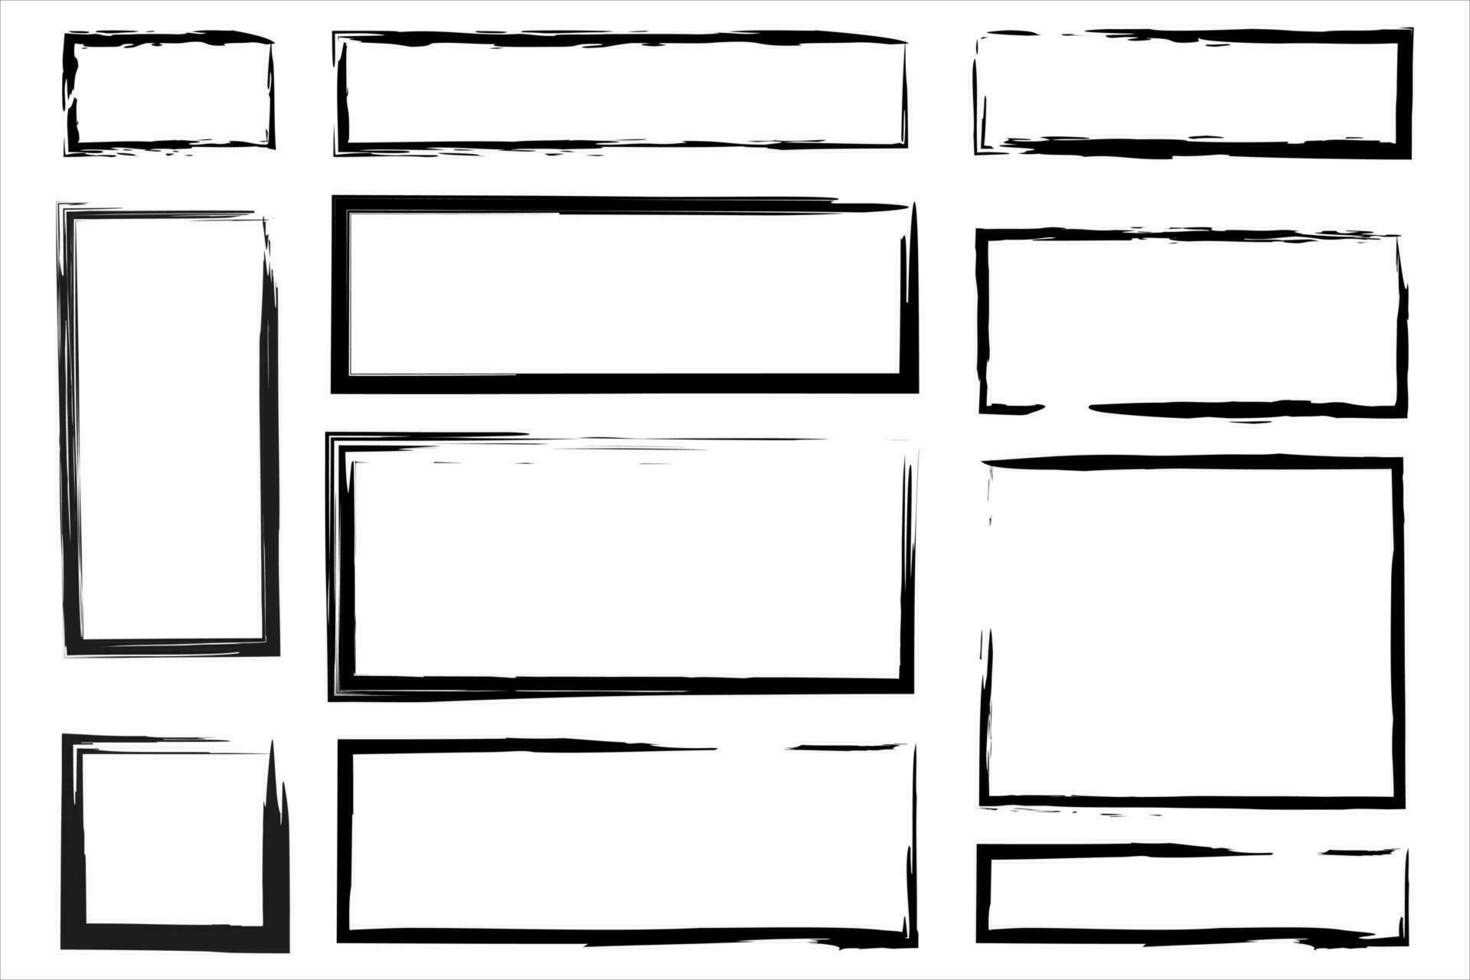 grunge conjunto de cuadrado y rectangular marcos tinta vacío negro cajas colección de rectangular fronteras rectangular marco sellos vector ilustración aislado en blanco antecedentes